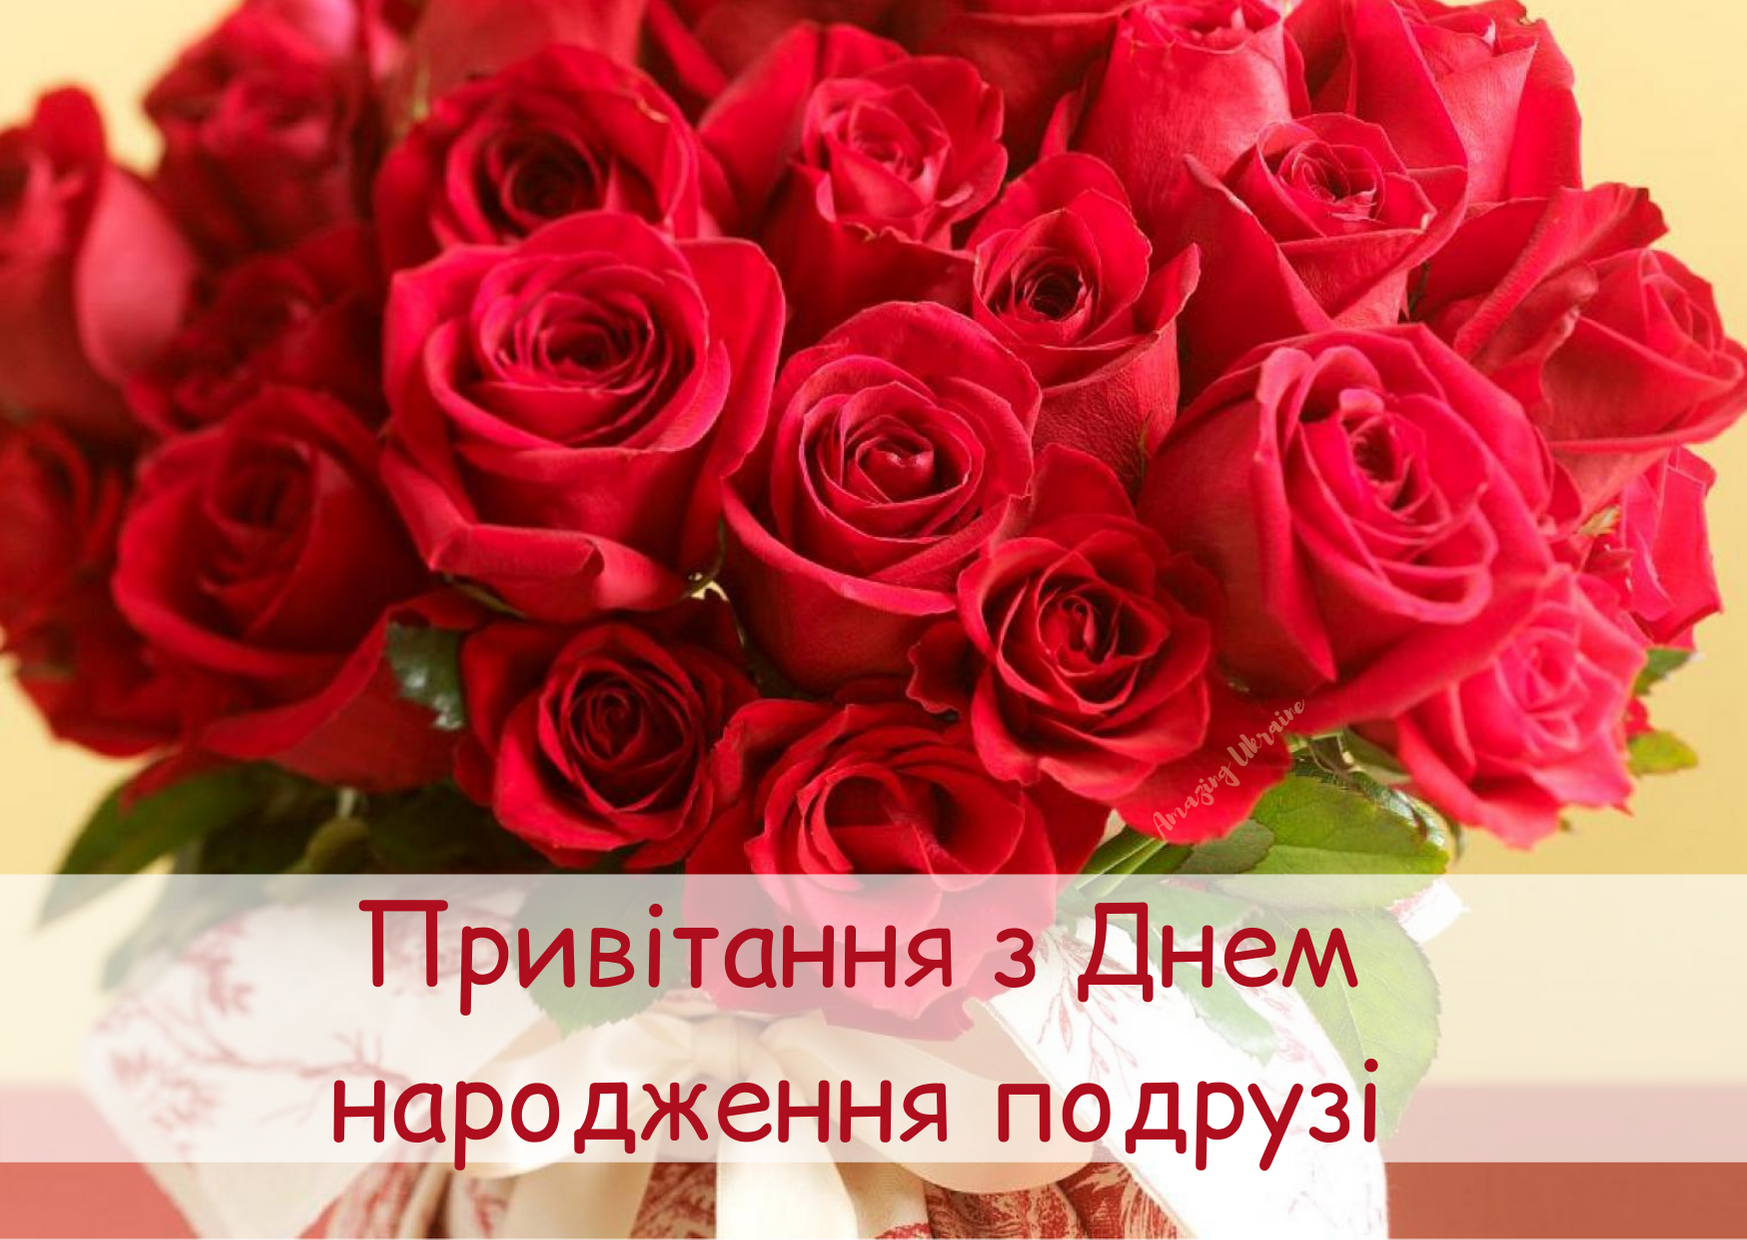 Вітання на день народження на українській. З днем народження. Вітаю з днем народження. Побажання з днем народження. Листівка з днем народження для жінки.